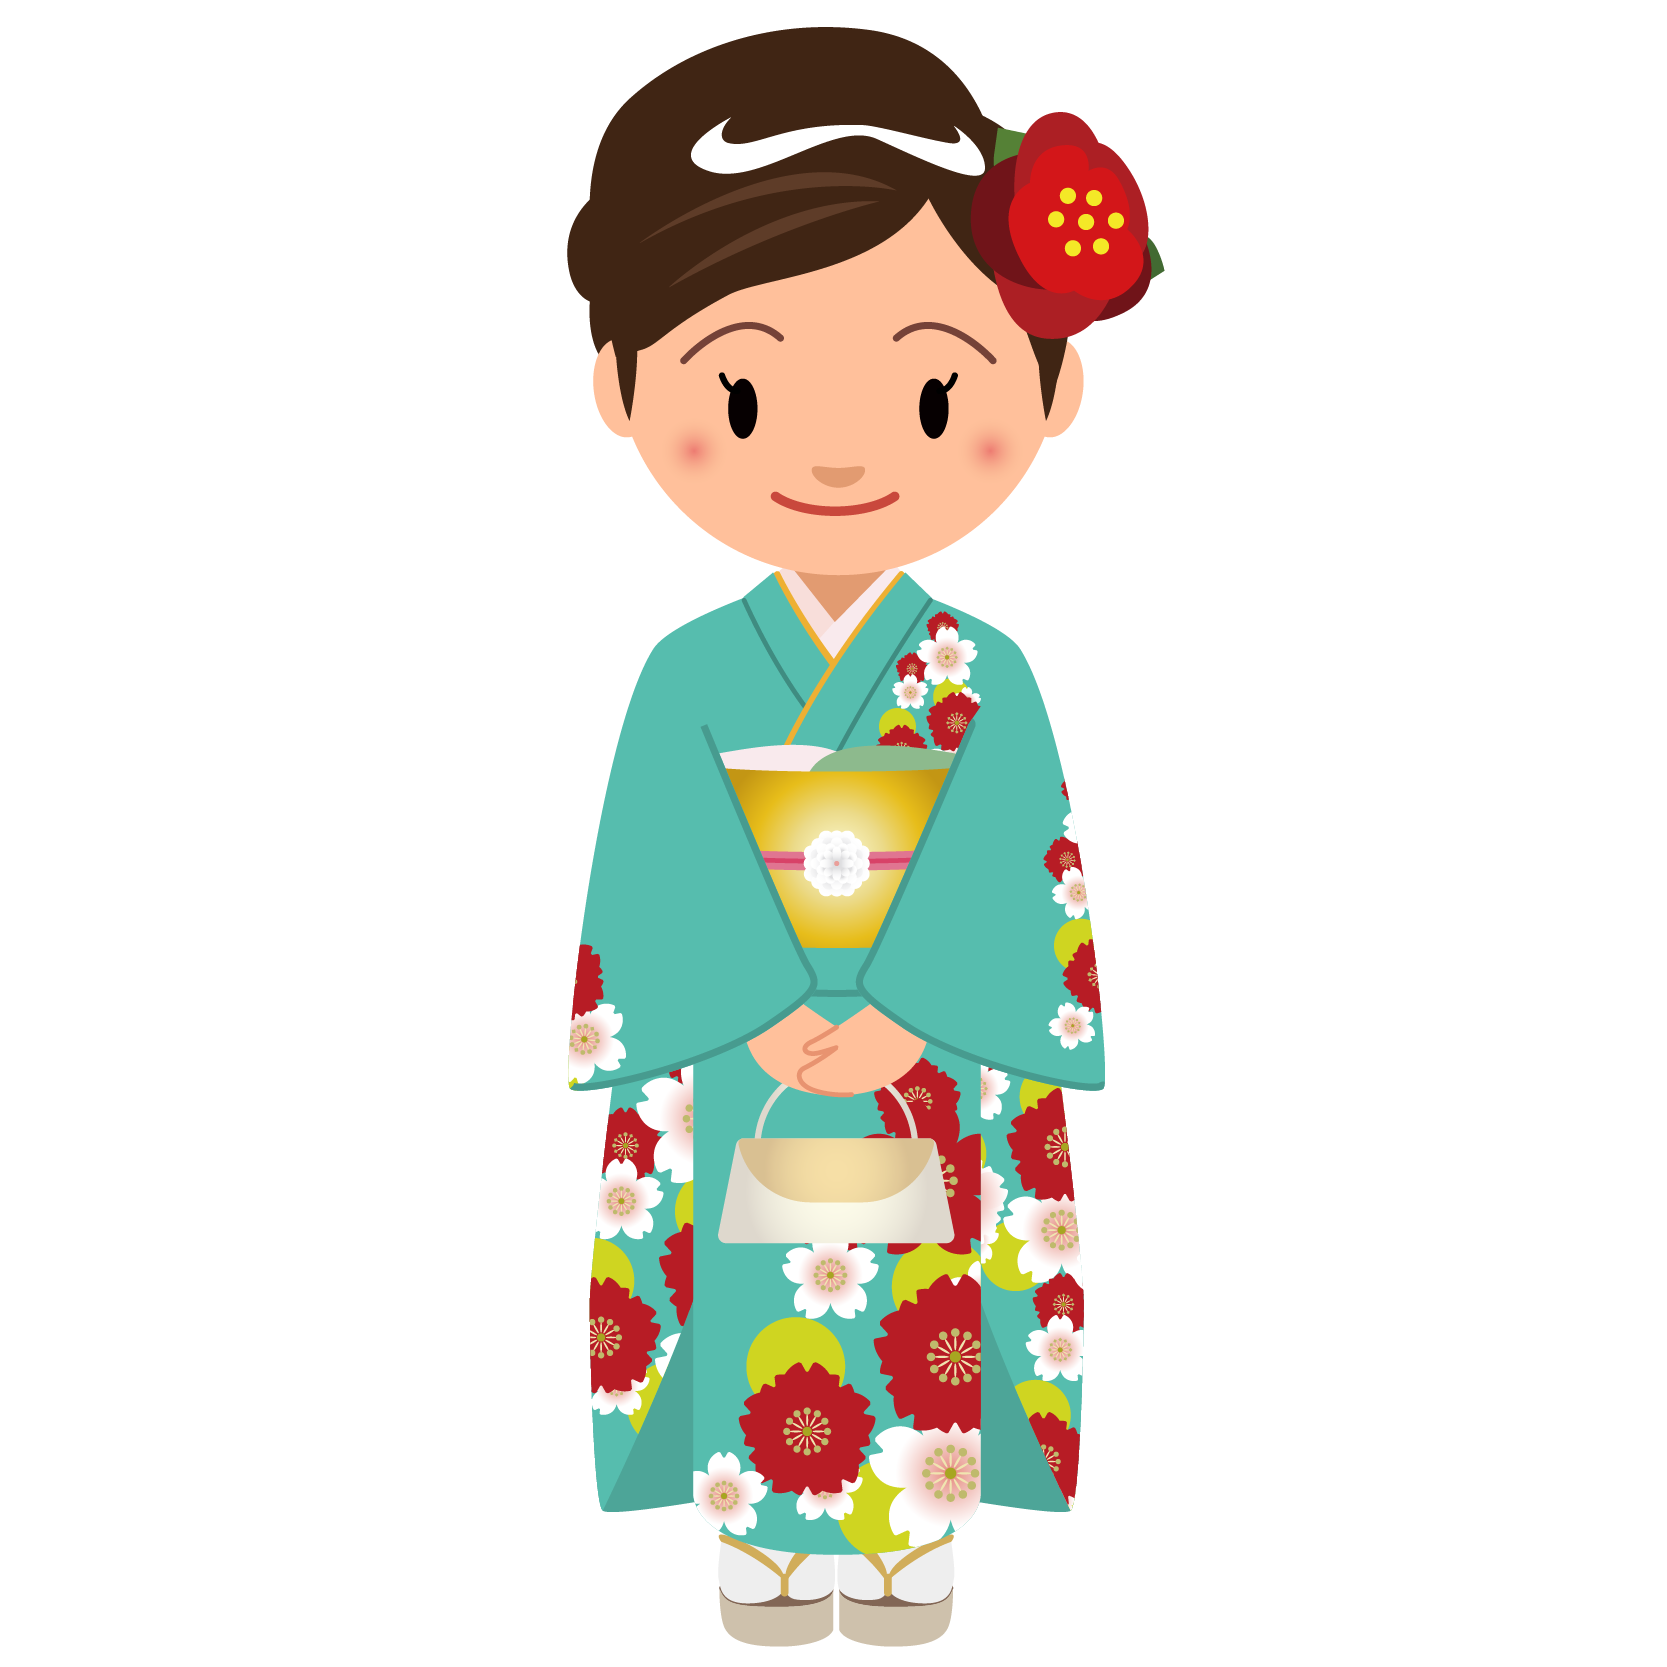 商用フリー 無料イラスト 緑の着物を着た女性 Kimono002 商用ok フリー素材集 ナイスなイラスト